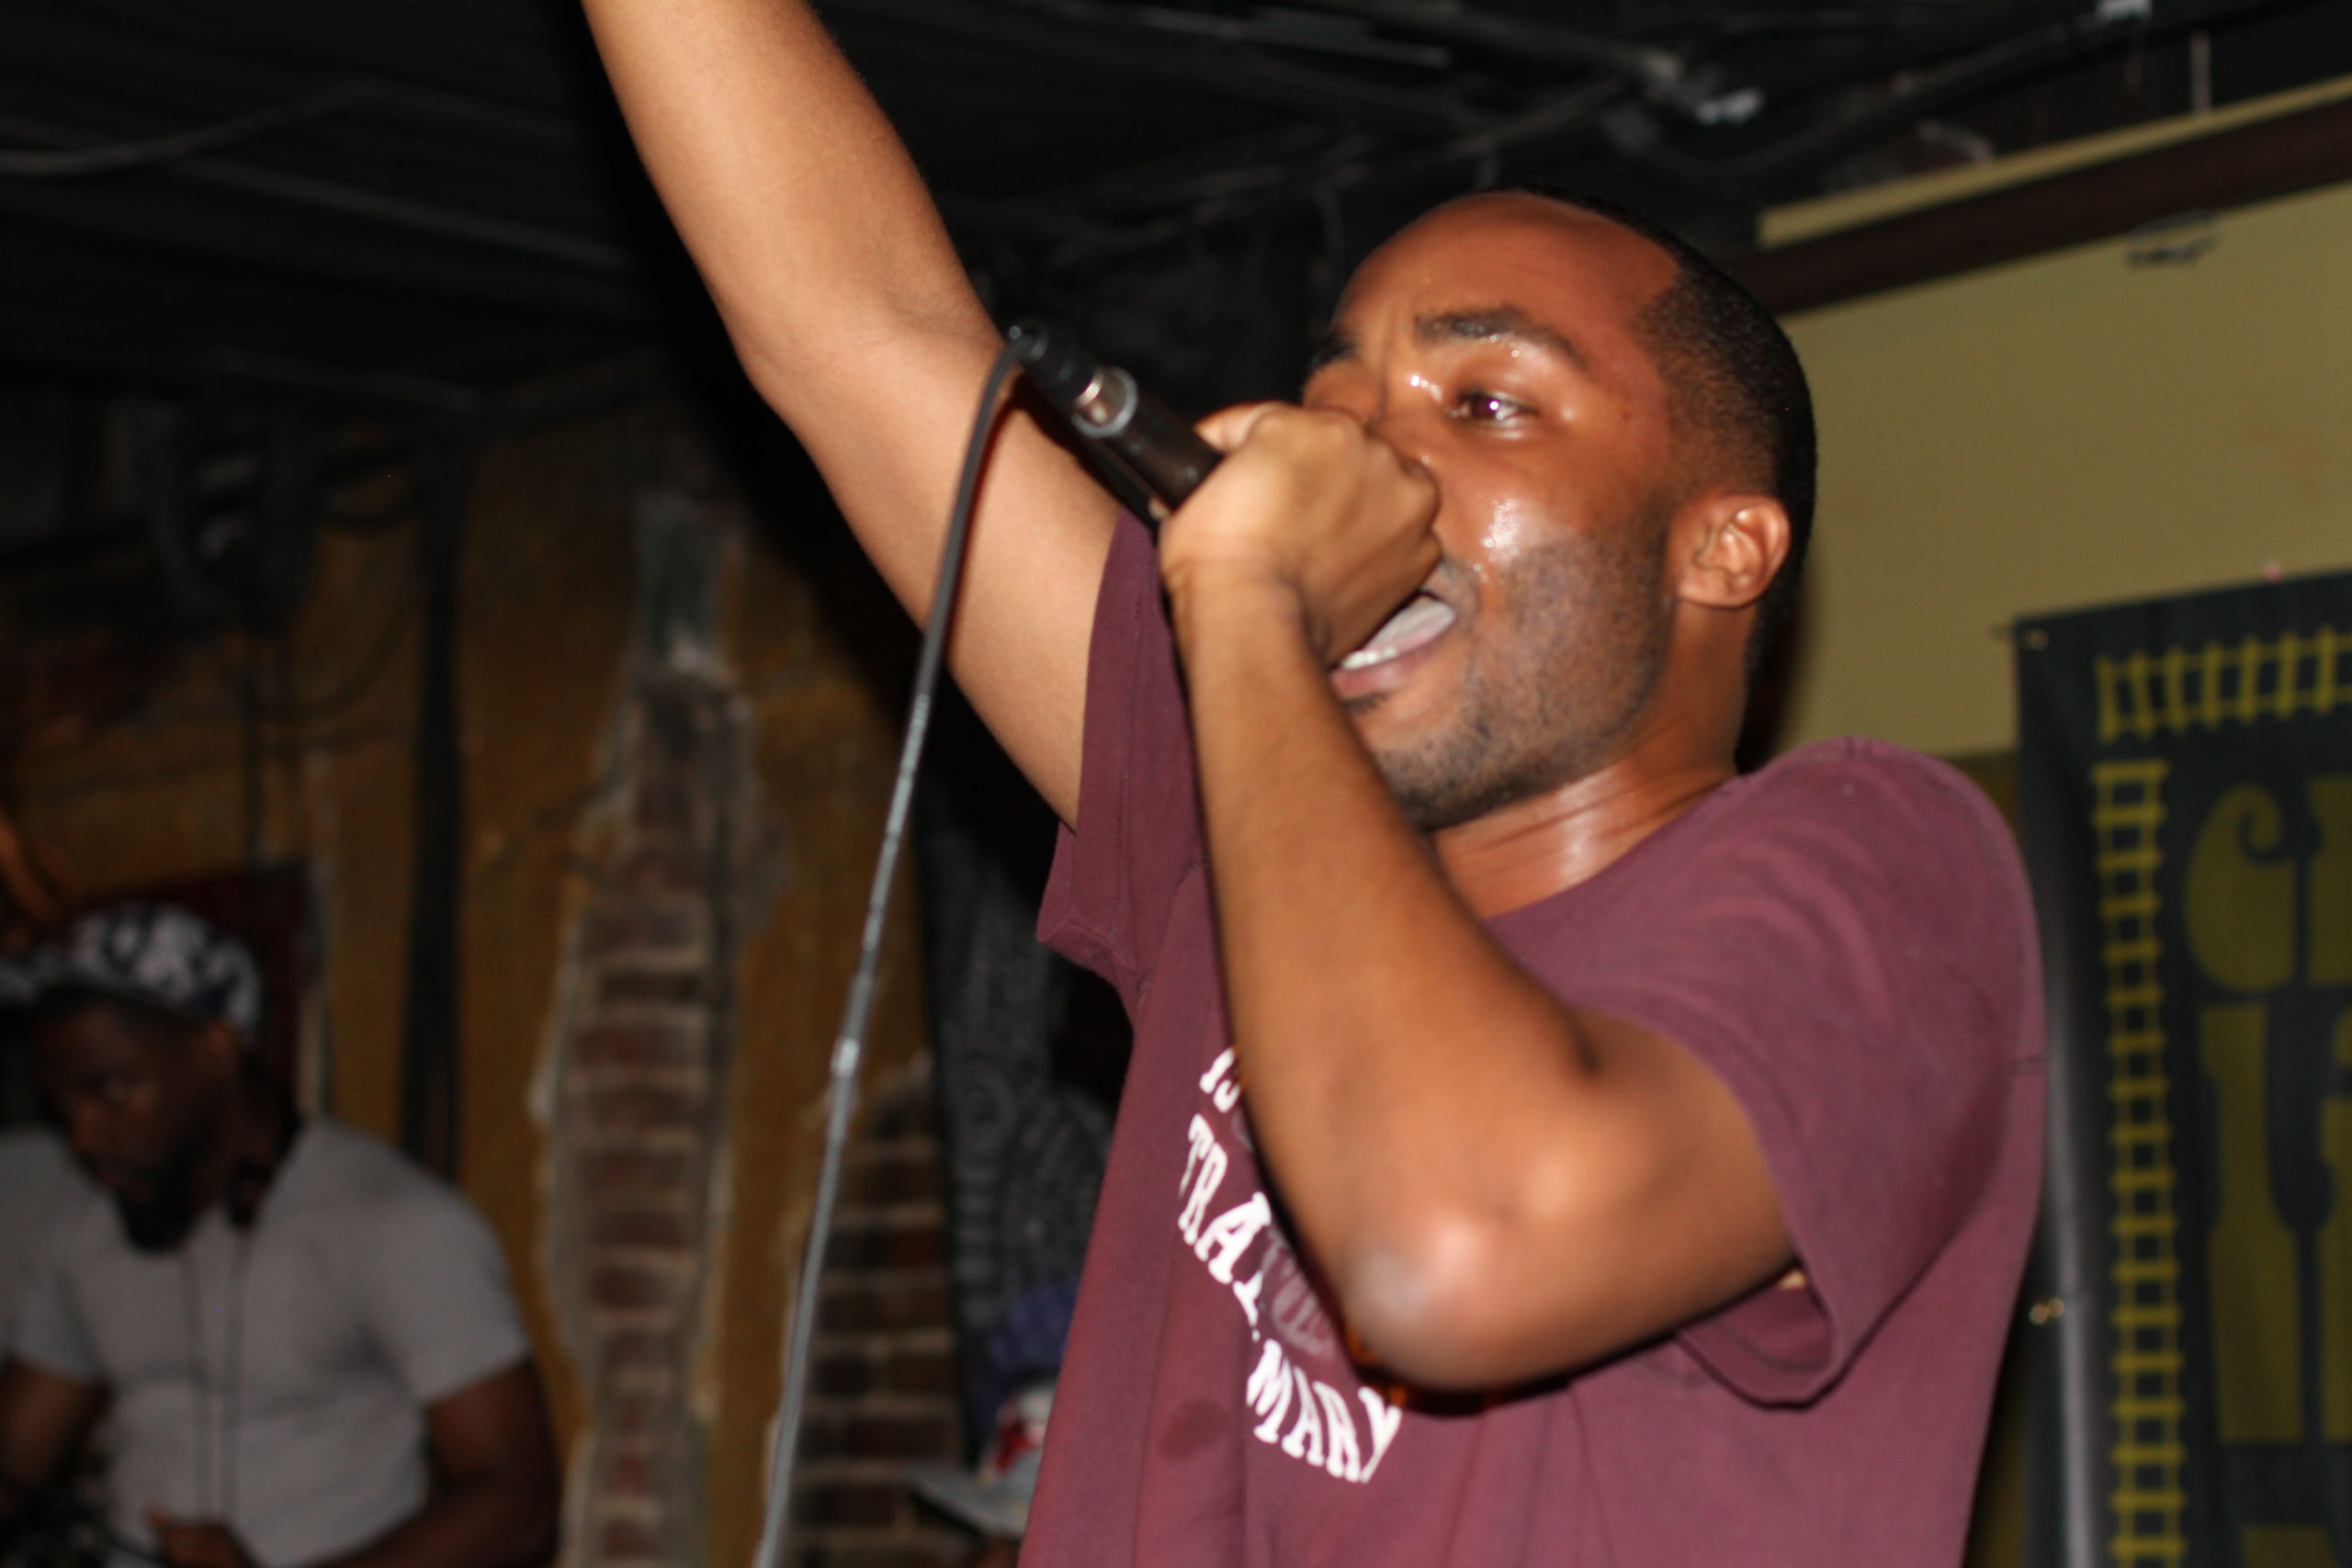 Komplex Performs “Real” At UGRailroad Hip-Hop Show (Video)